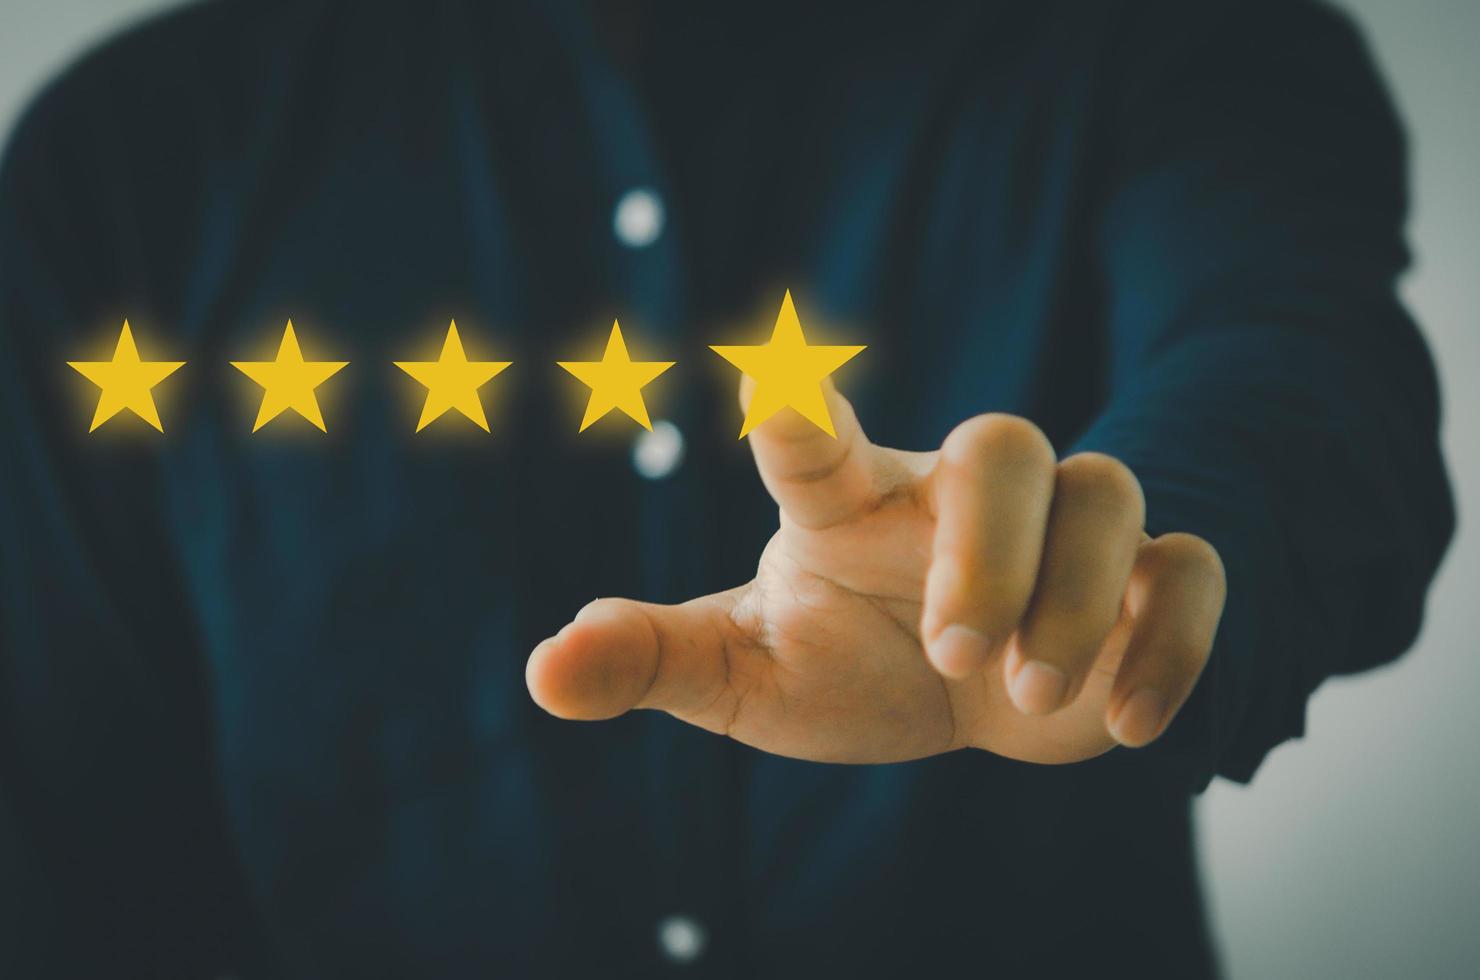 concetto del cliente servizio eccellente per la soddisfazione valutazione a cinque stelle con touch screen da uomo d'affari.feedback e recensioni positive dei clienti. foto